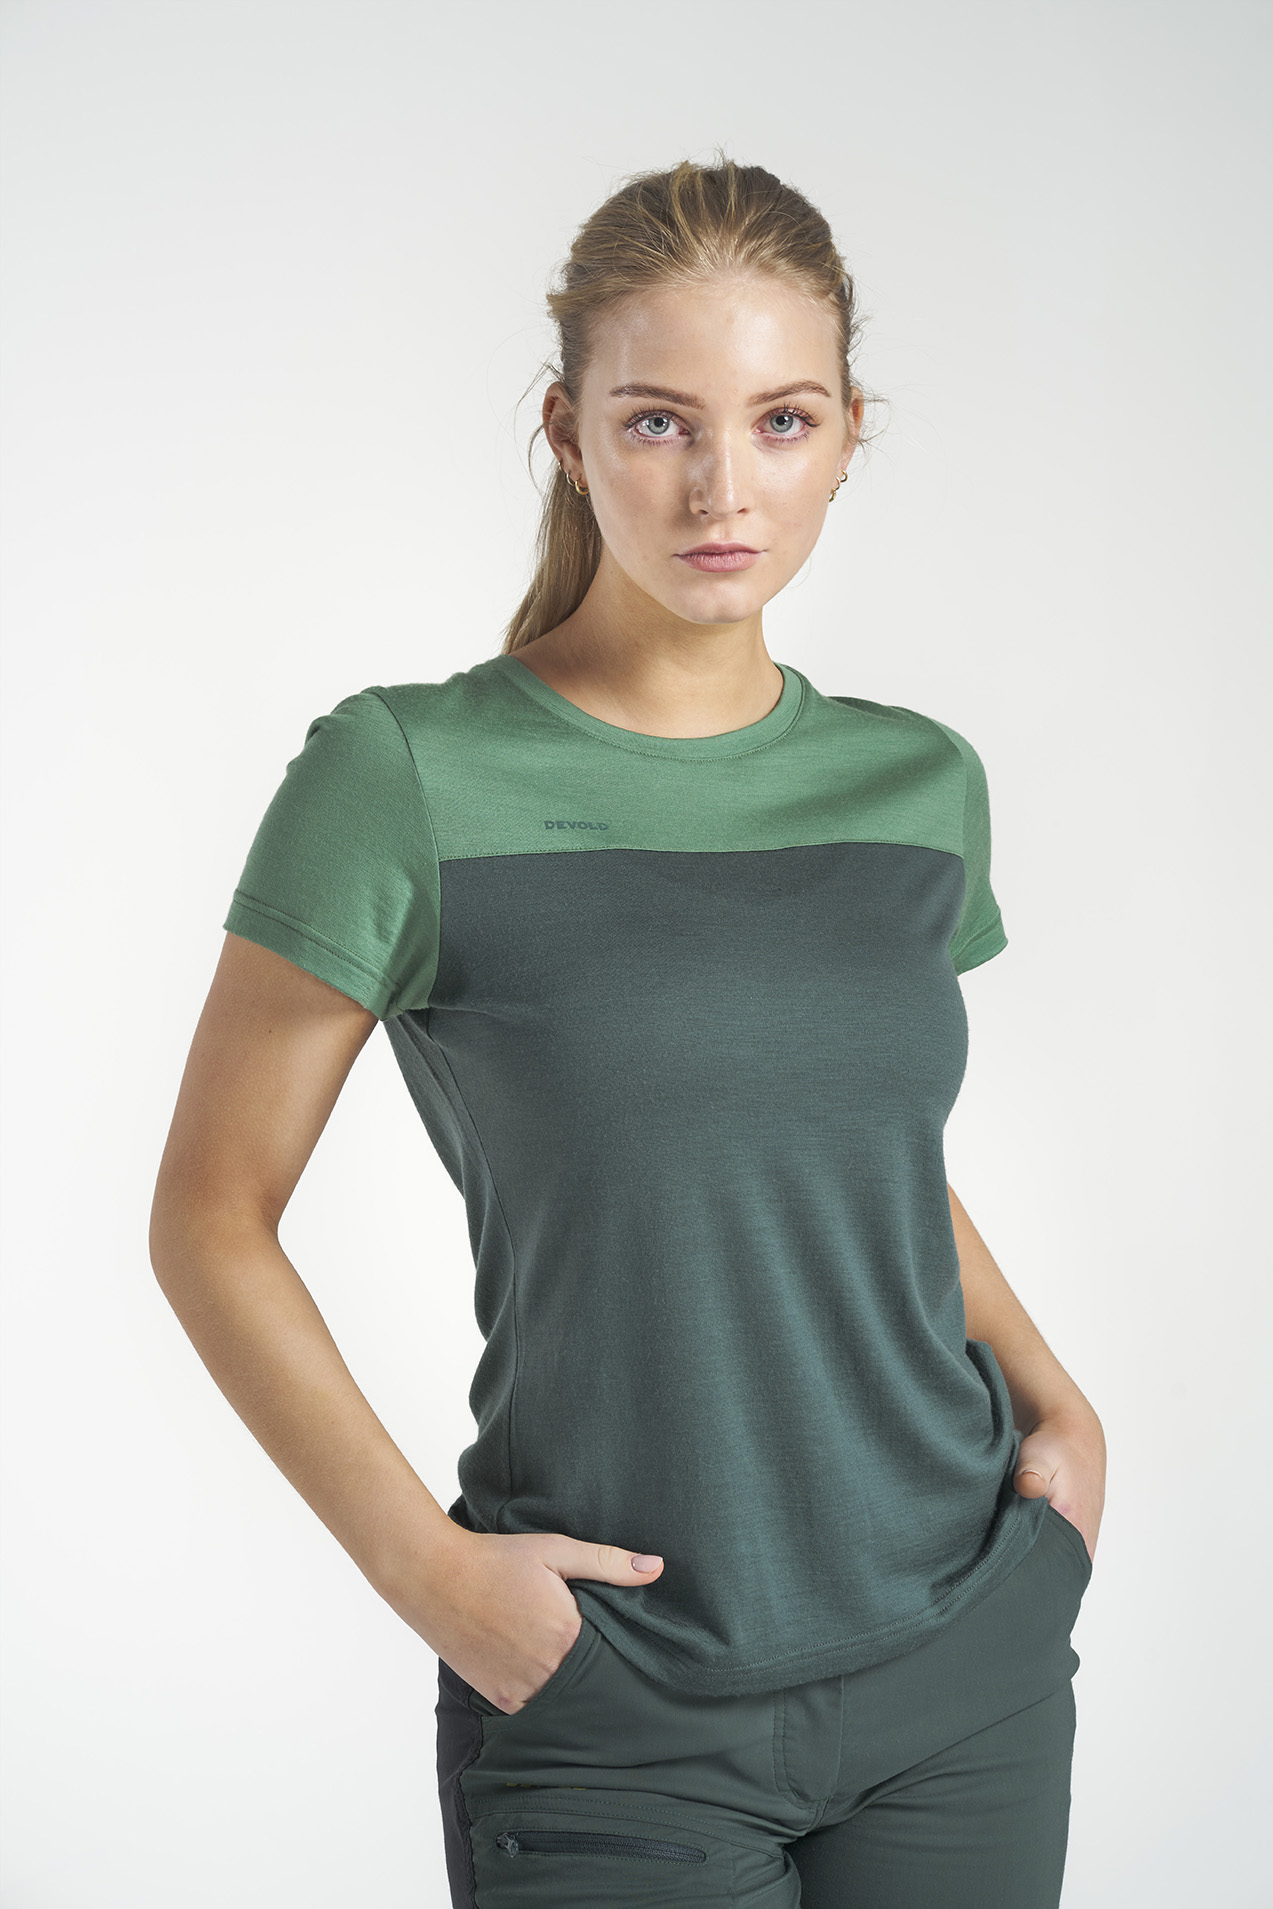 Devold Norang - Camiseta lana merino - Mujer